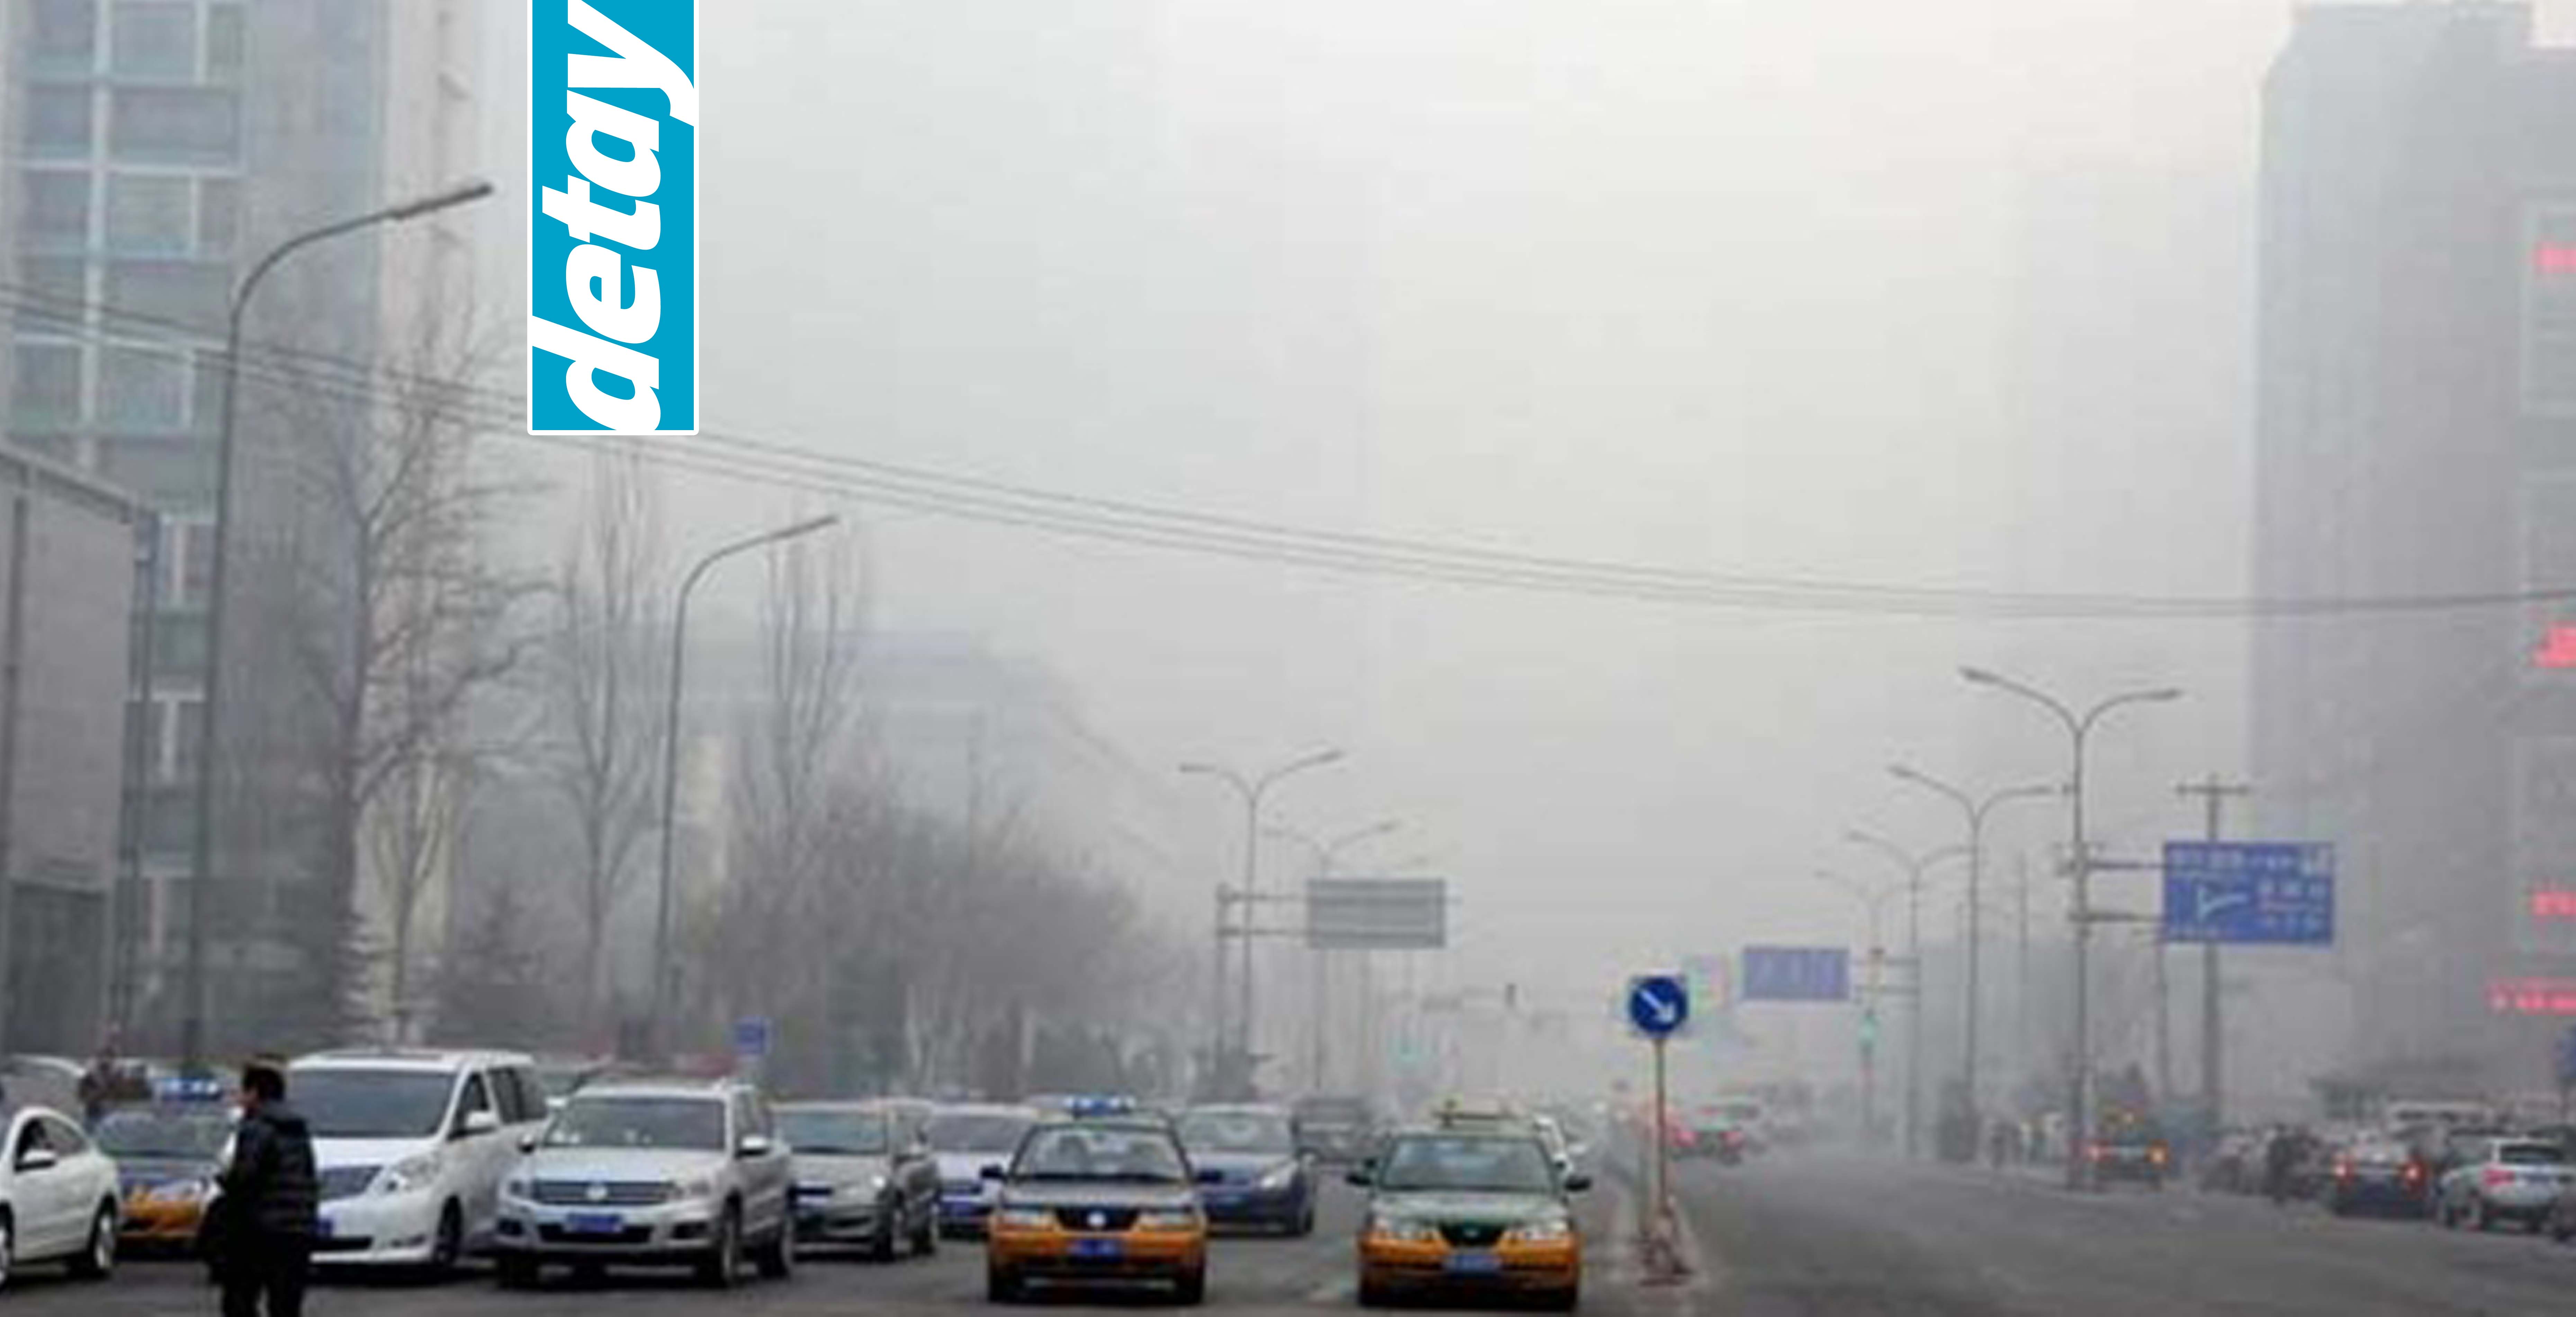 Çin'de hava kirliliği